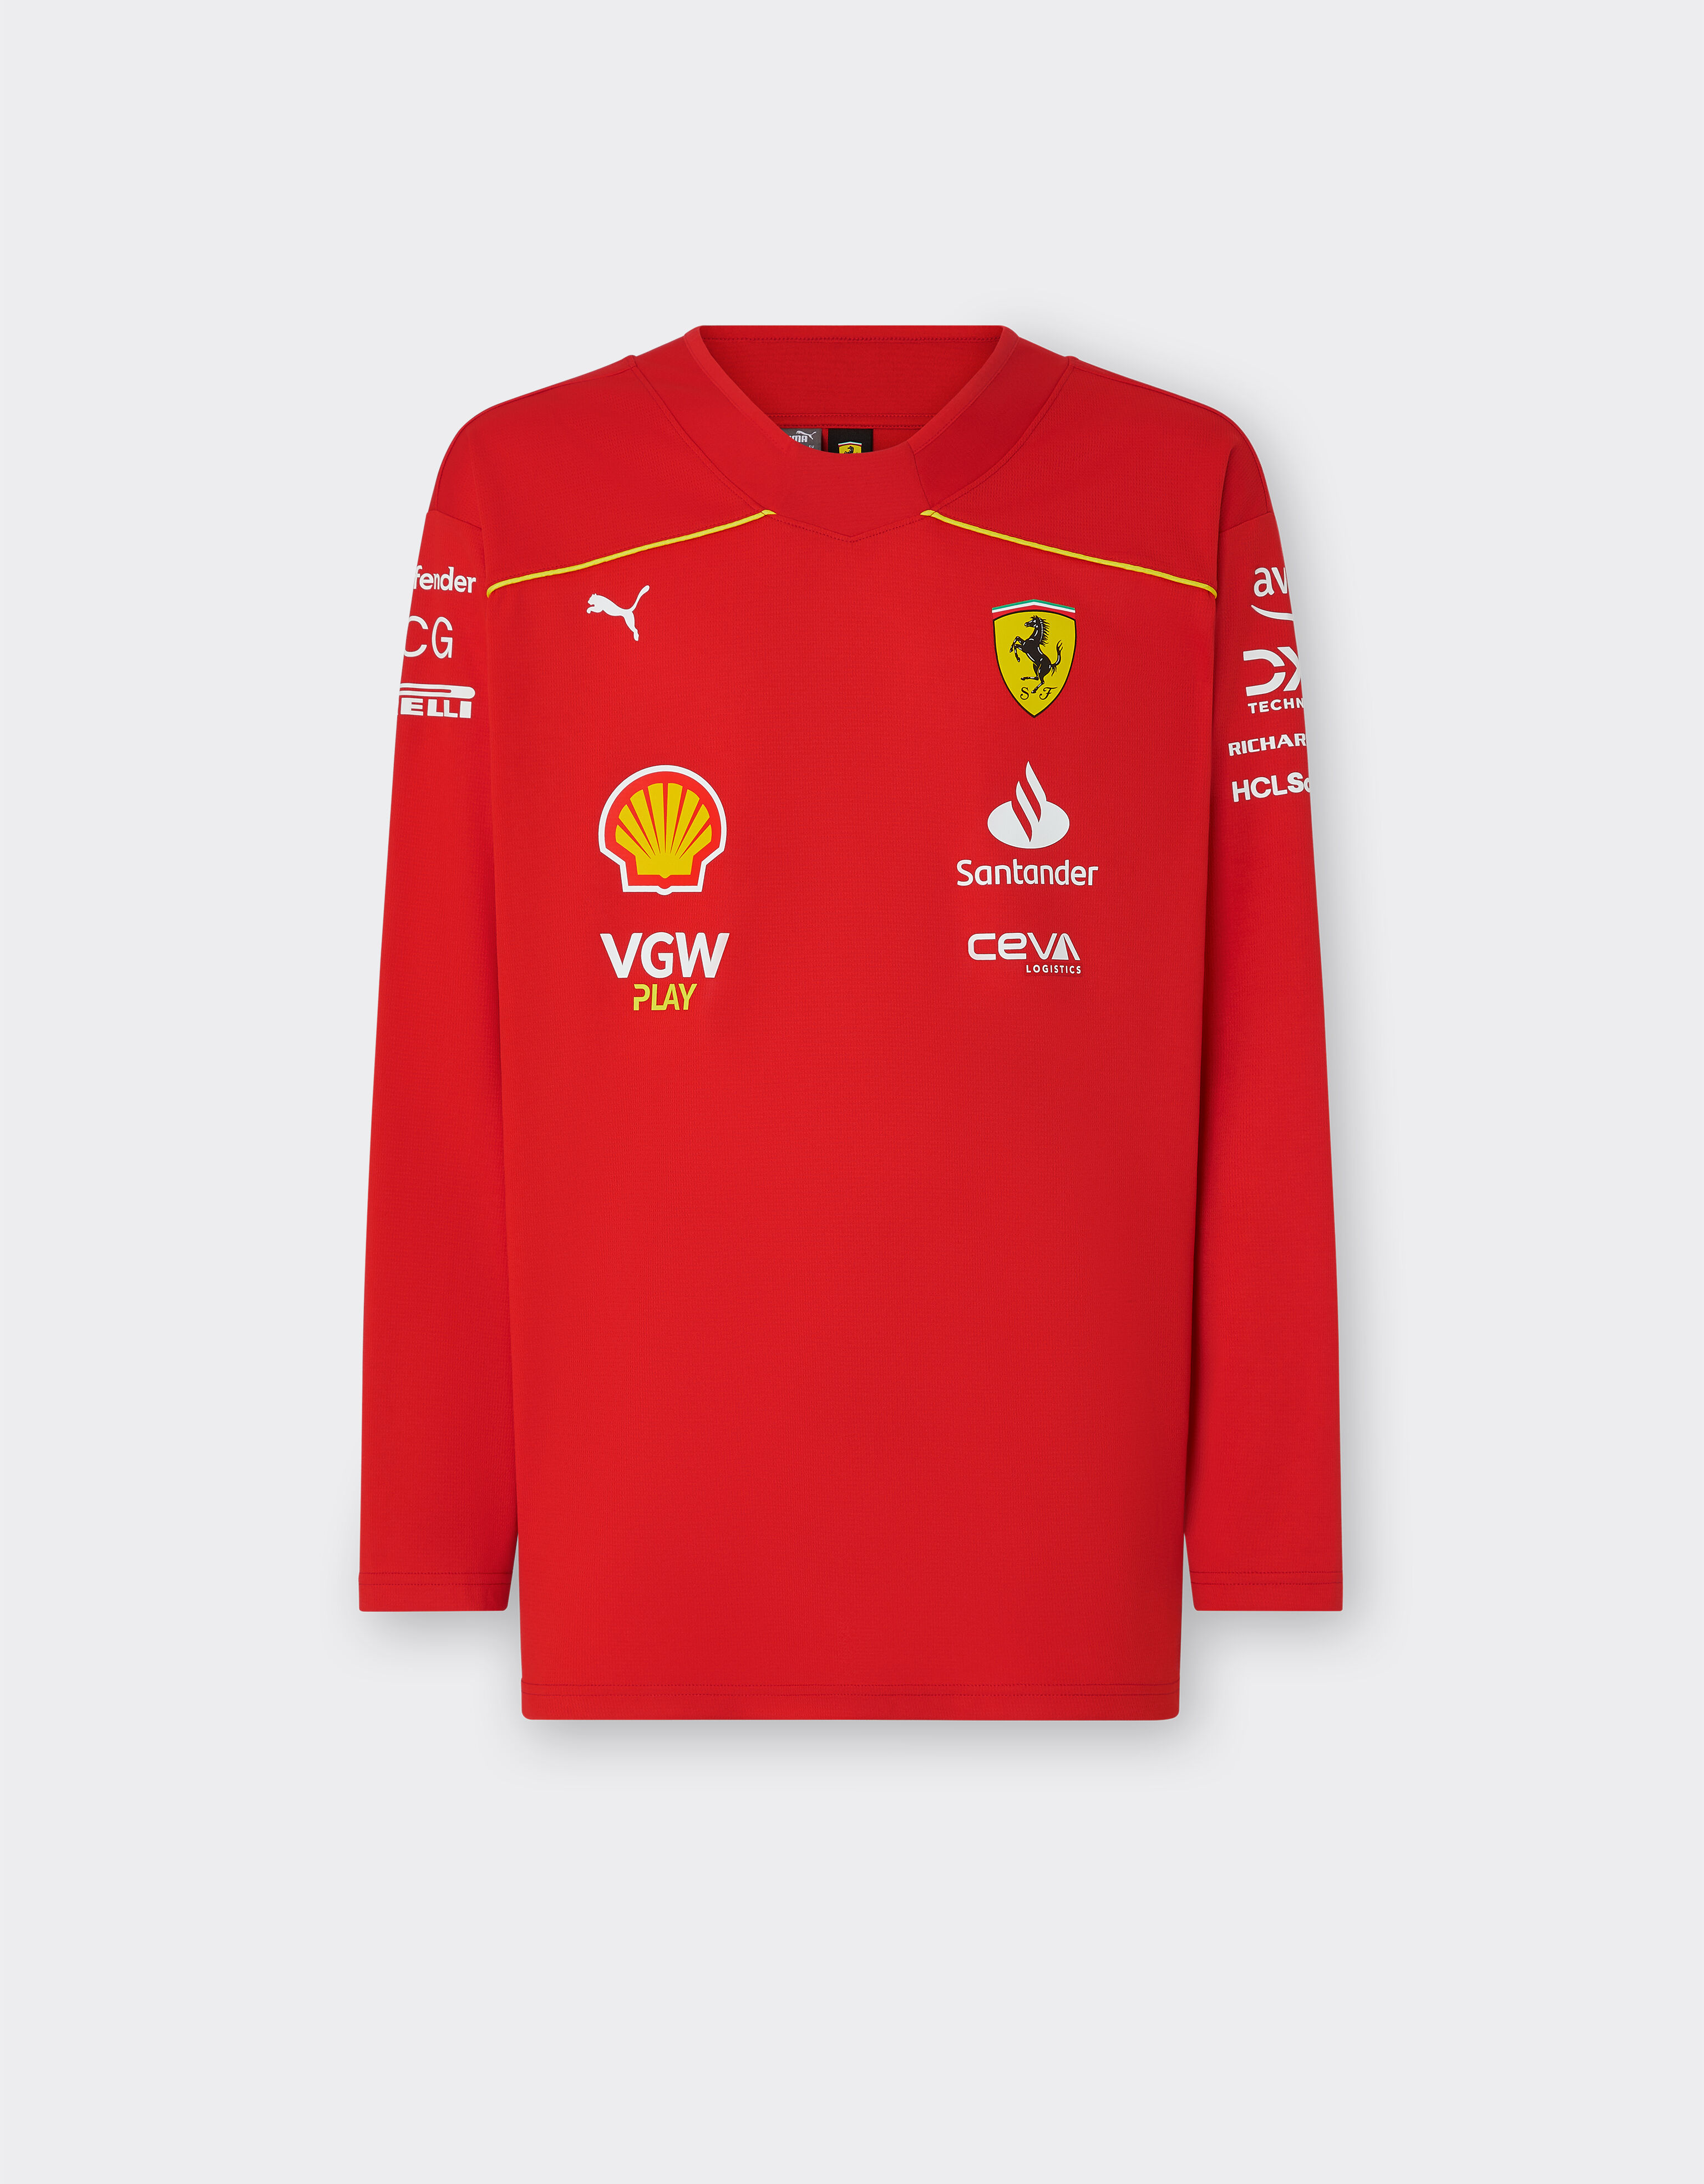 ${brand} Camiseta de hockey Puma de Sainz para la Scuderia Ferrari - Edición especial Canadá ${colorDescription} ${masterID}